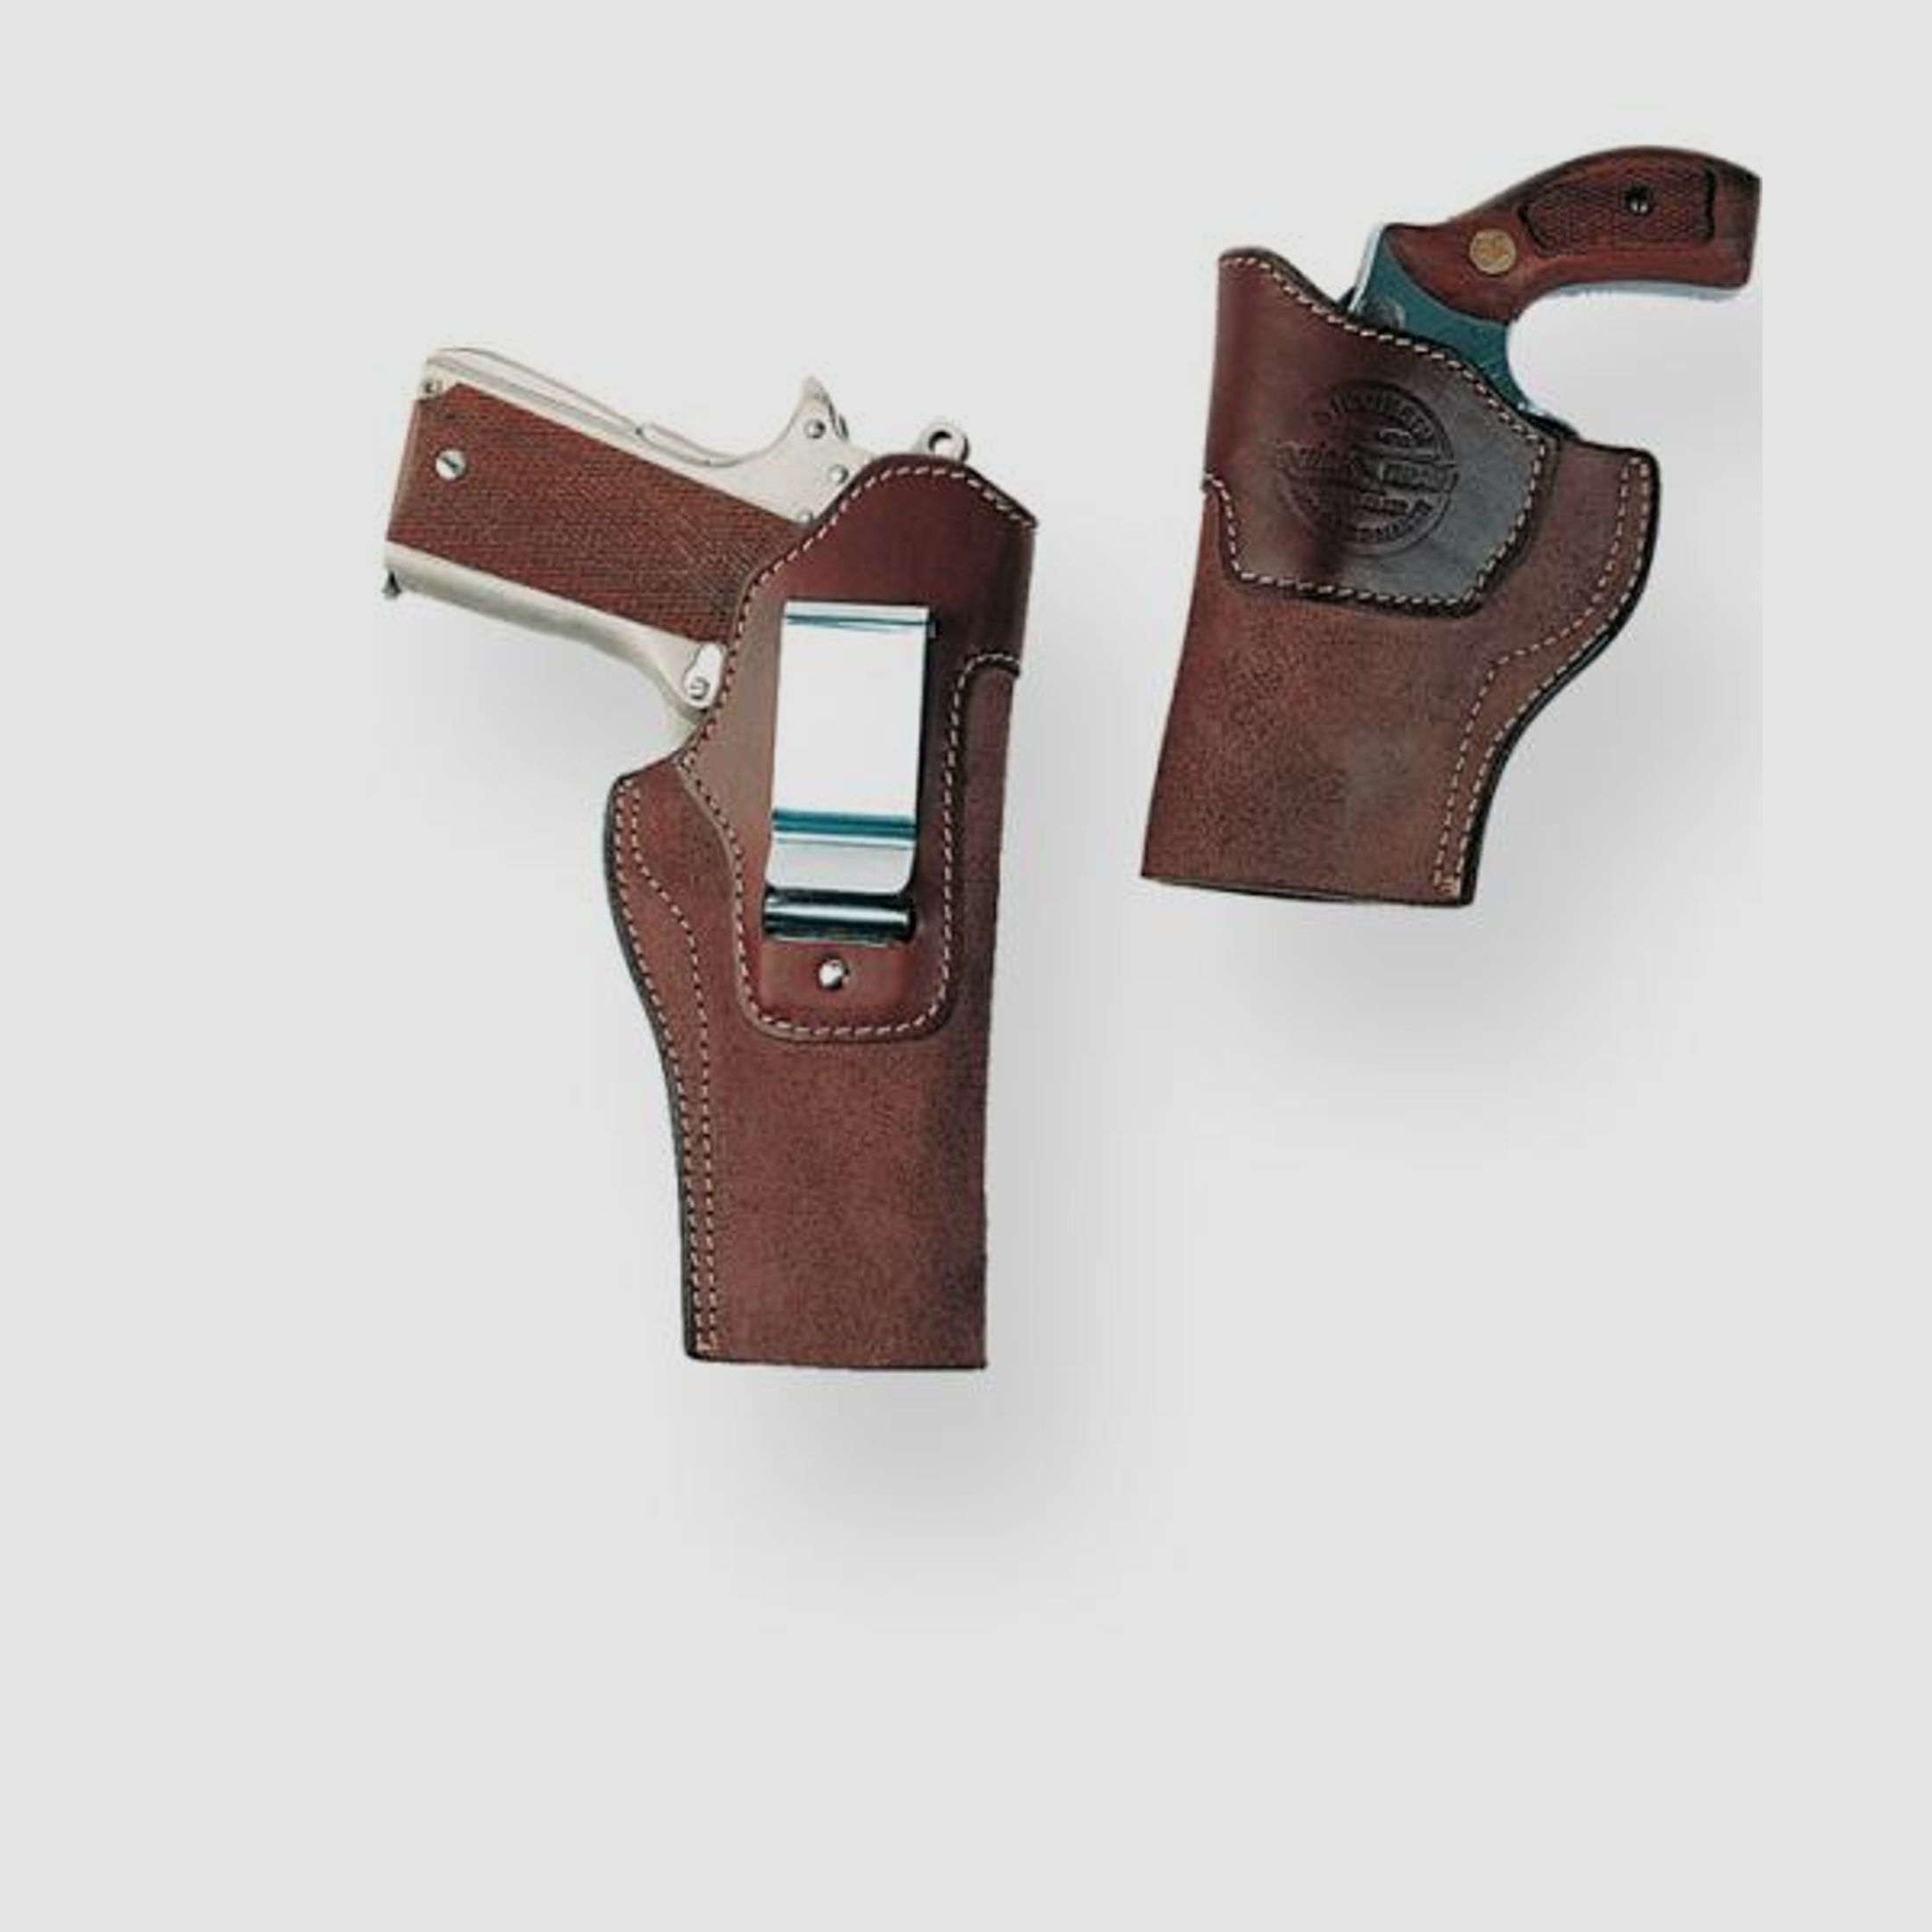 SICKINGER Innenbund-/Beinholster f. Glock17/SIG 226/Walther P88 63059  -Inside Clip braun